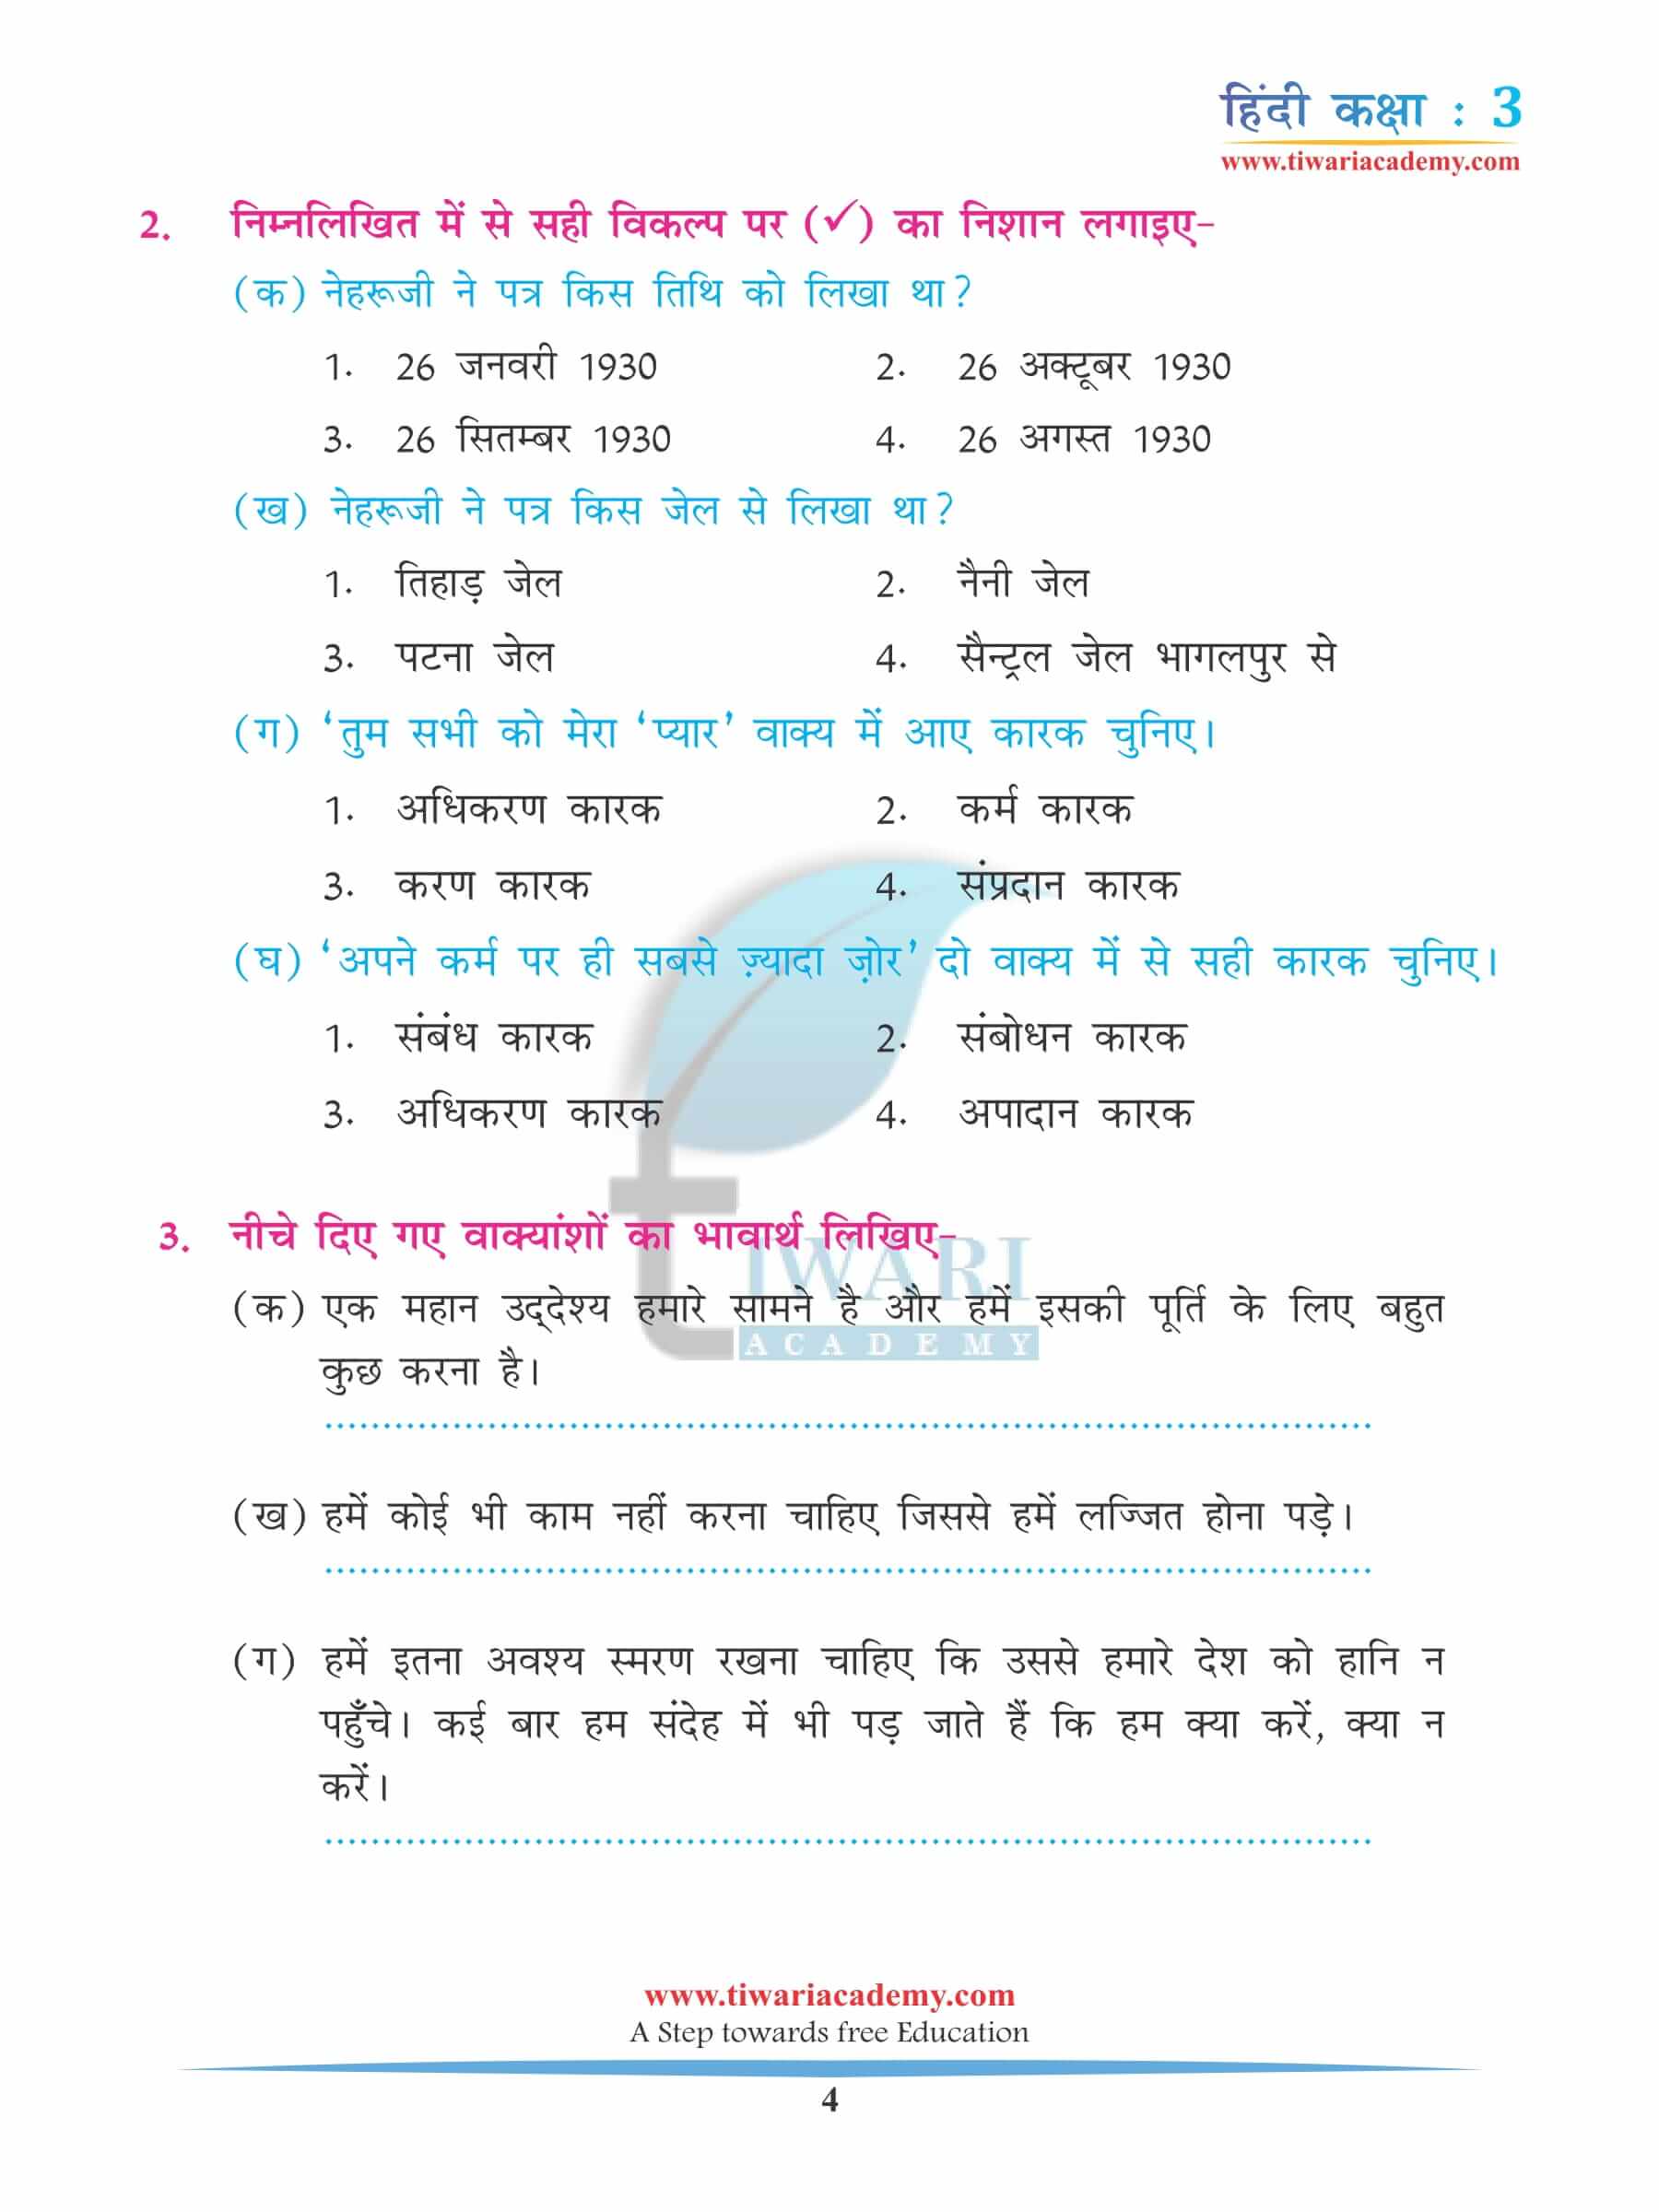 कक्षा 3 हिंदी अध्याय 9 अभ्यास प्रश्न